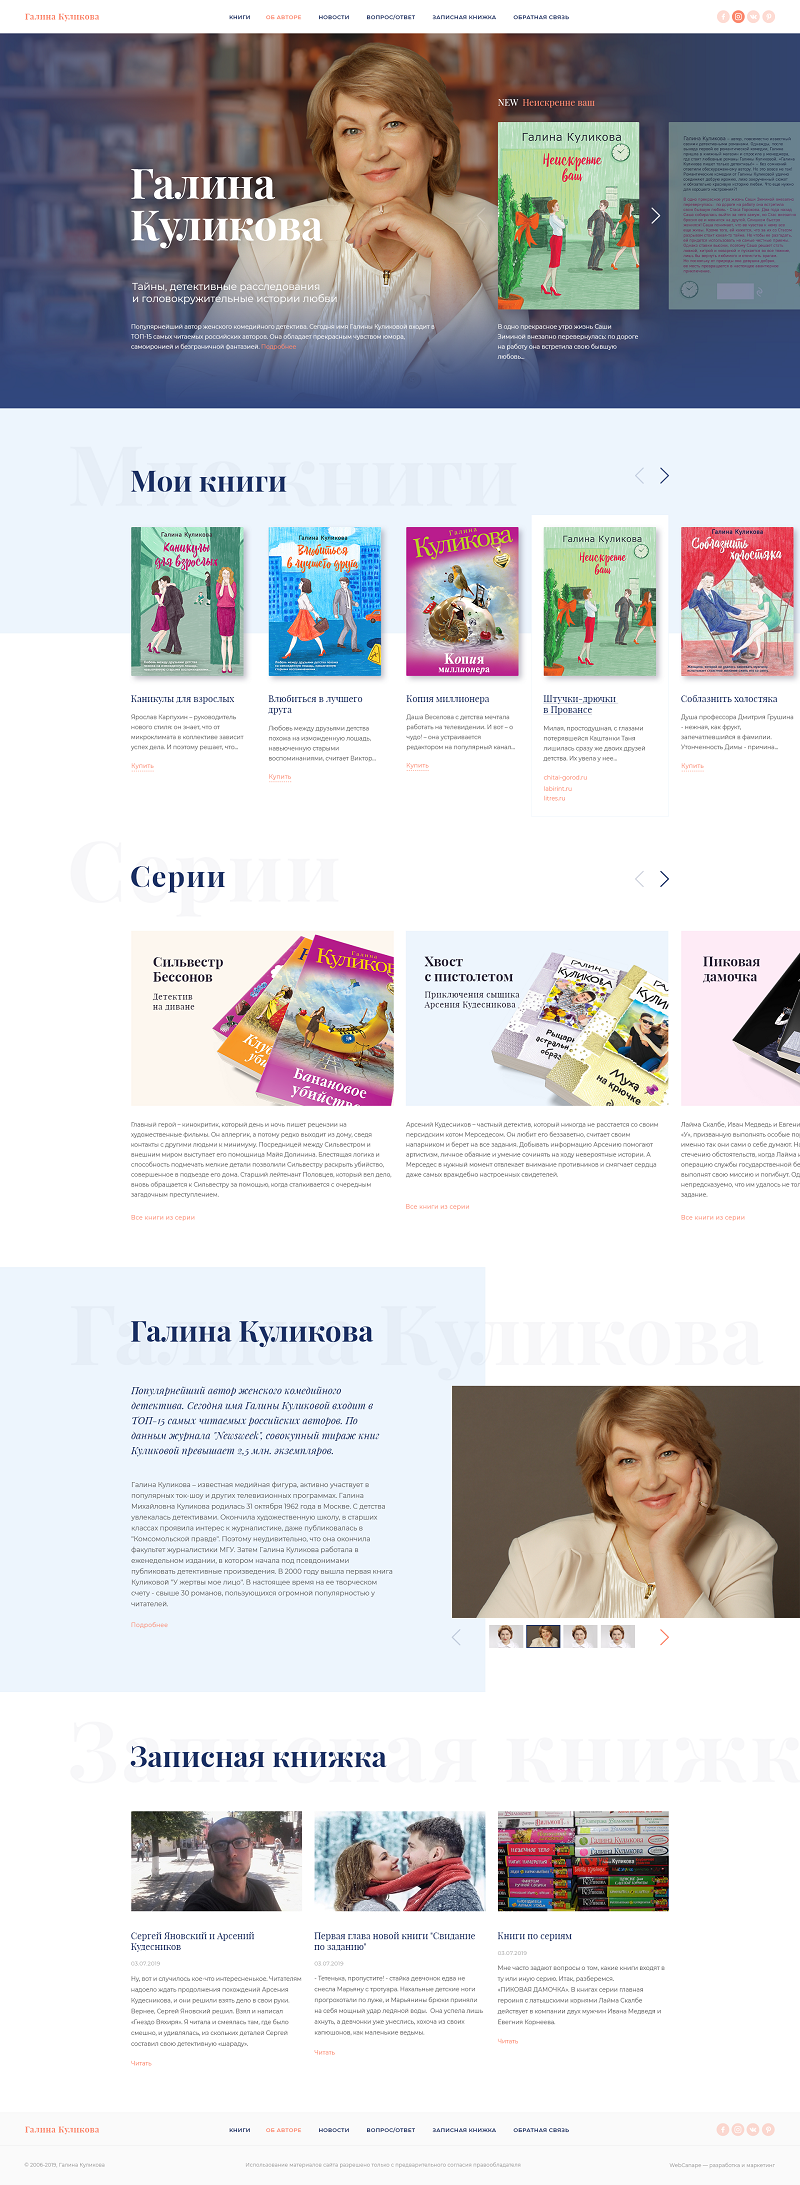 Разработка сайта для автора детективов Галины Куликовой